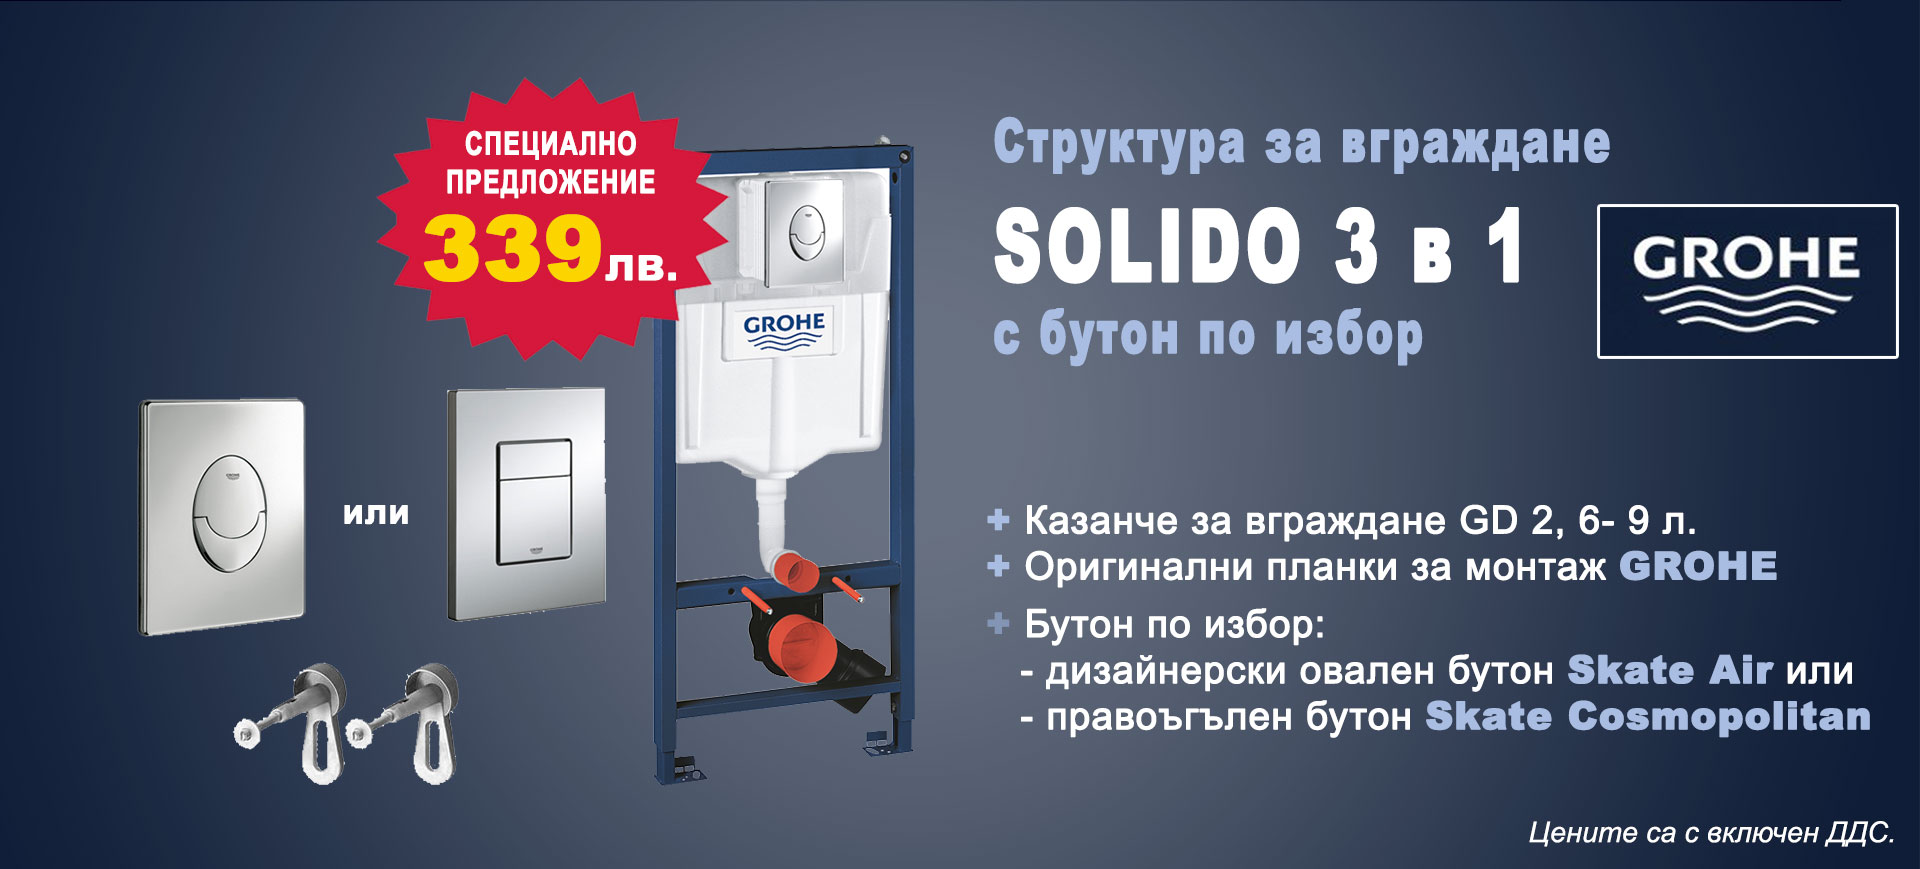 Комплект за вграждане GROHE Solido 3 в 1 на специална цена